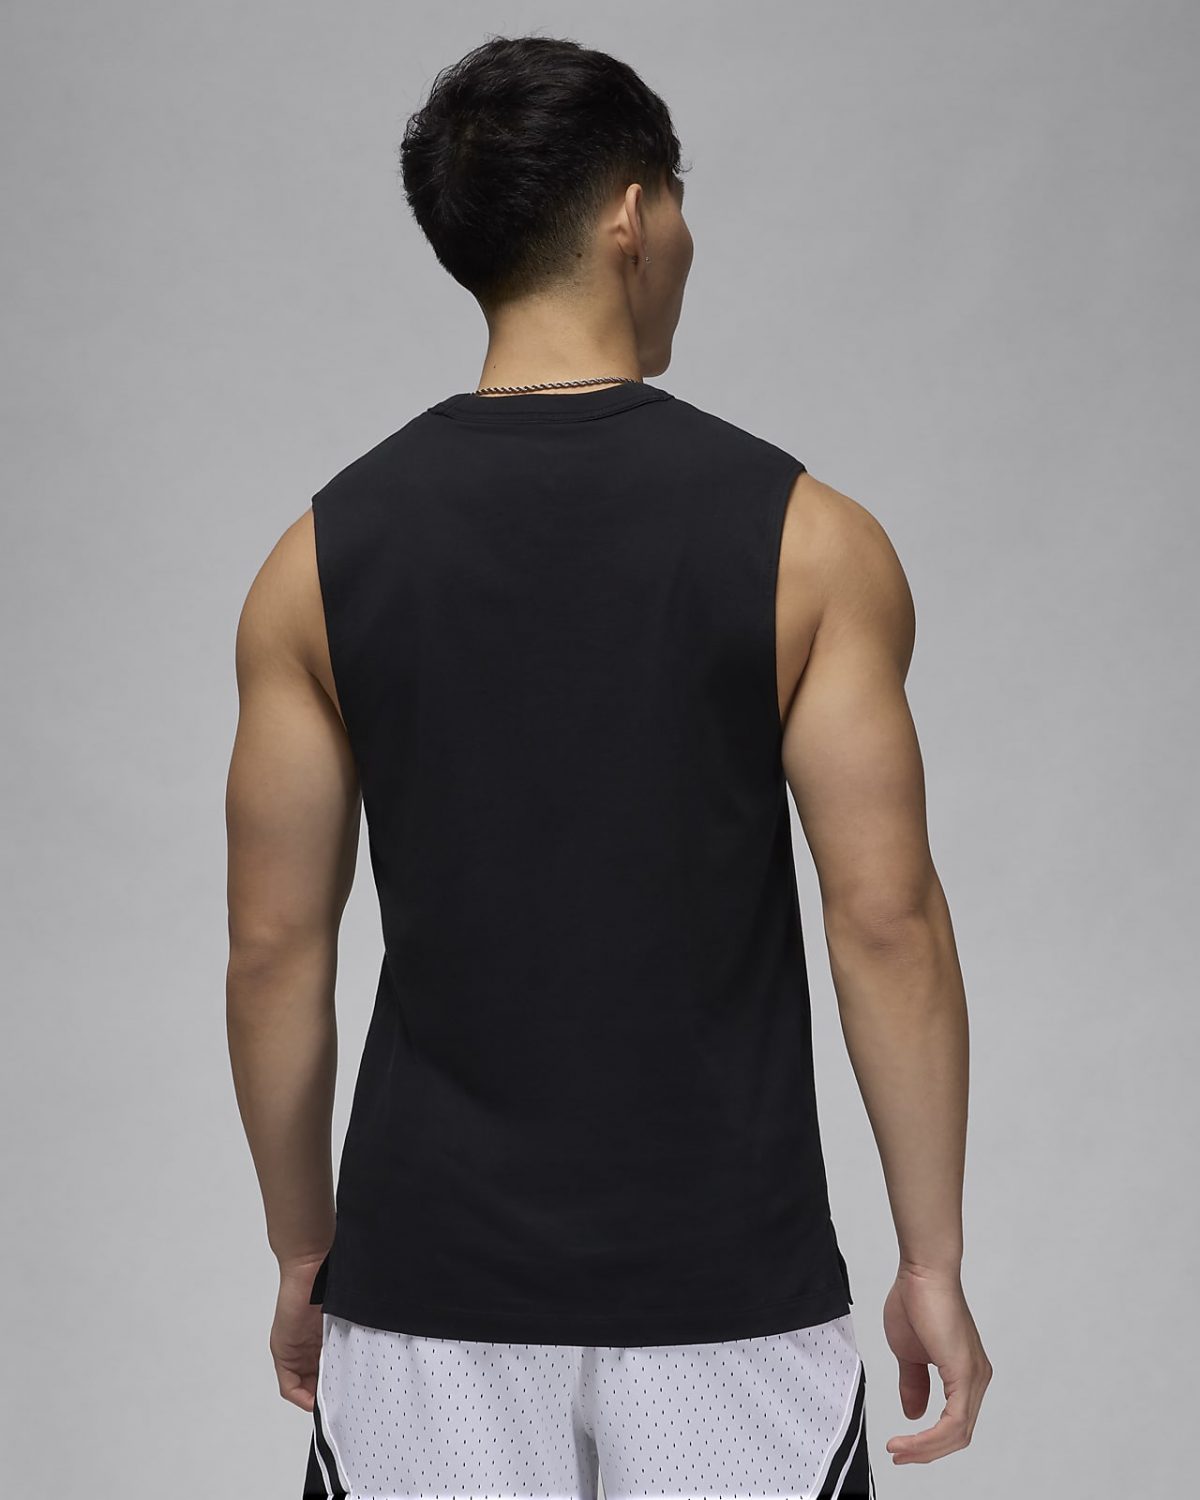 Мужская рубашка nike Jordan Sport черная фотография